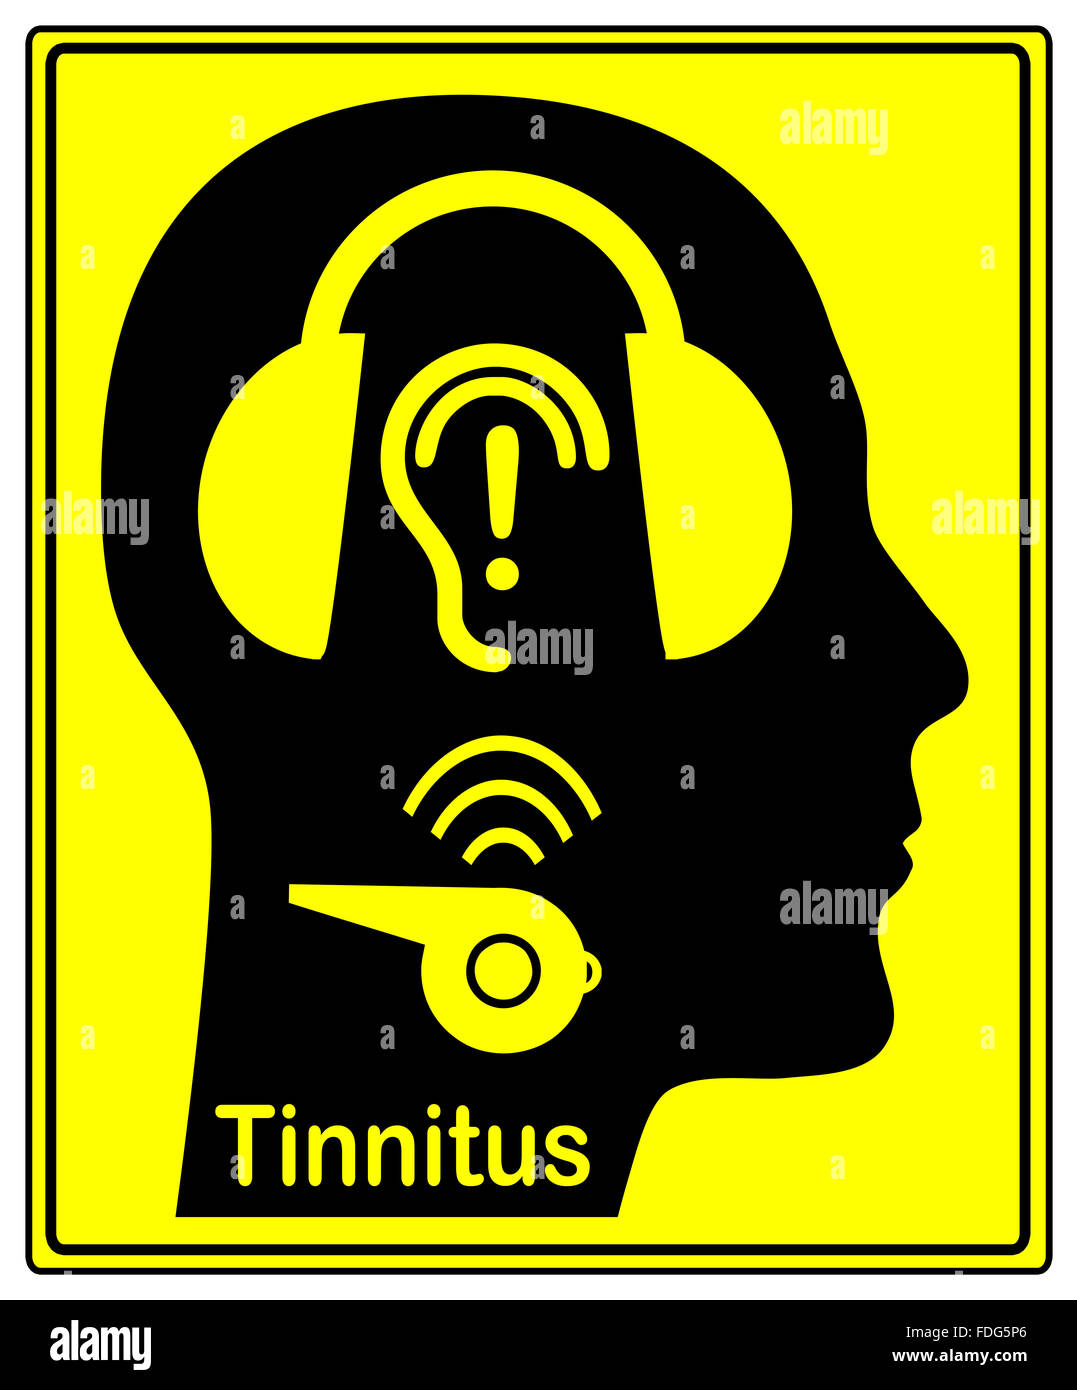 Beware of Tinnitus Stock Photo